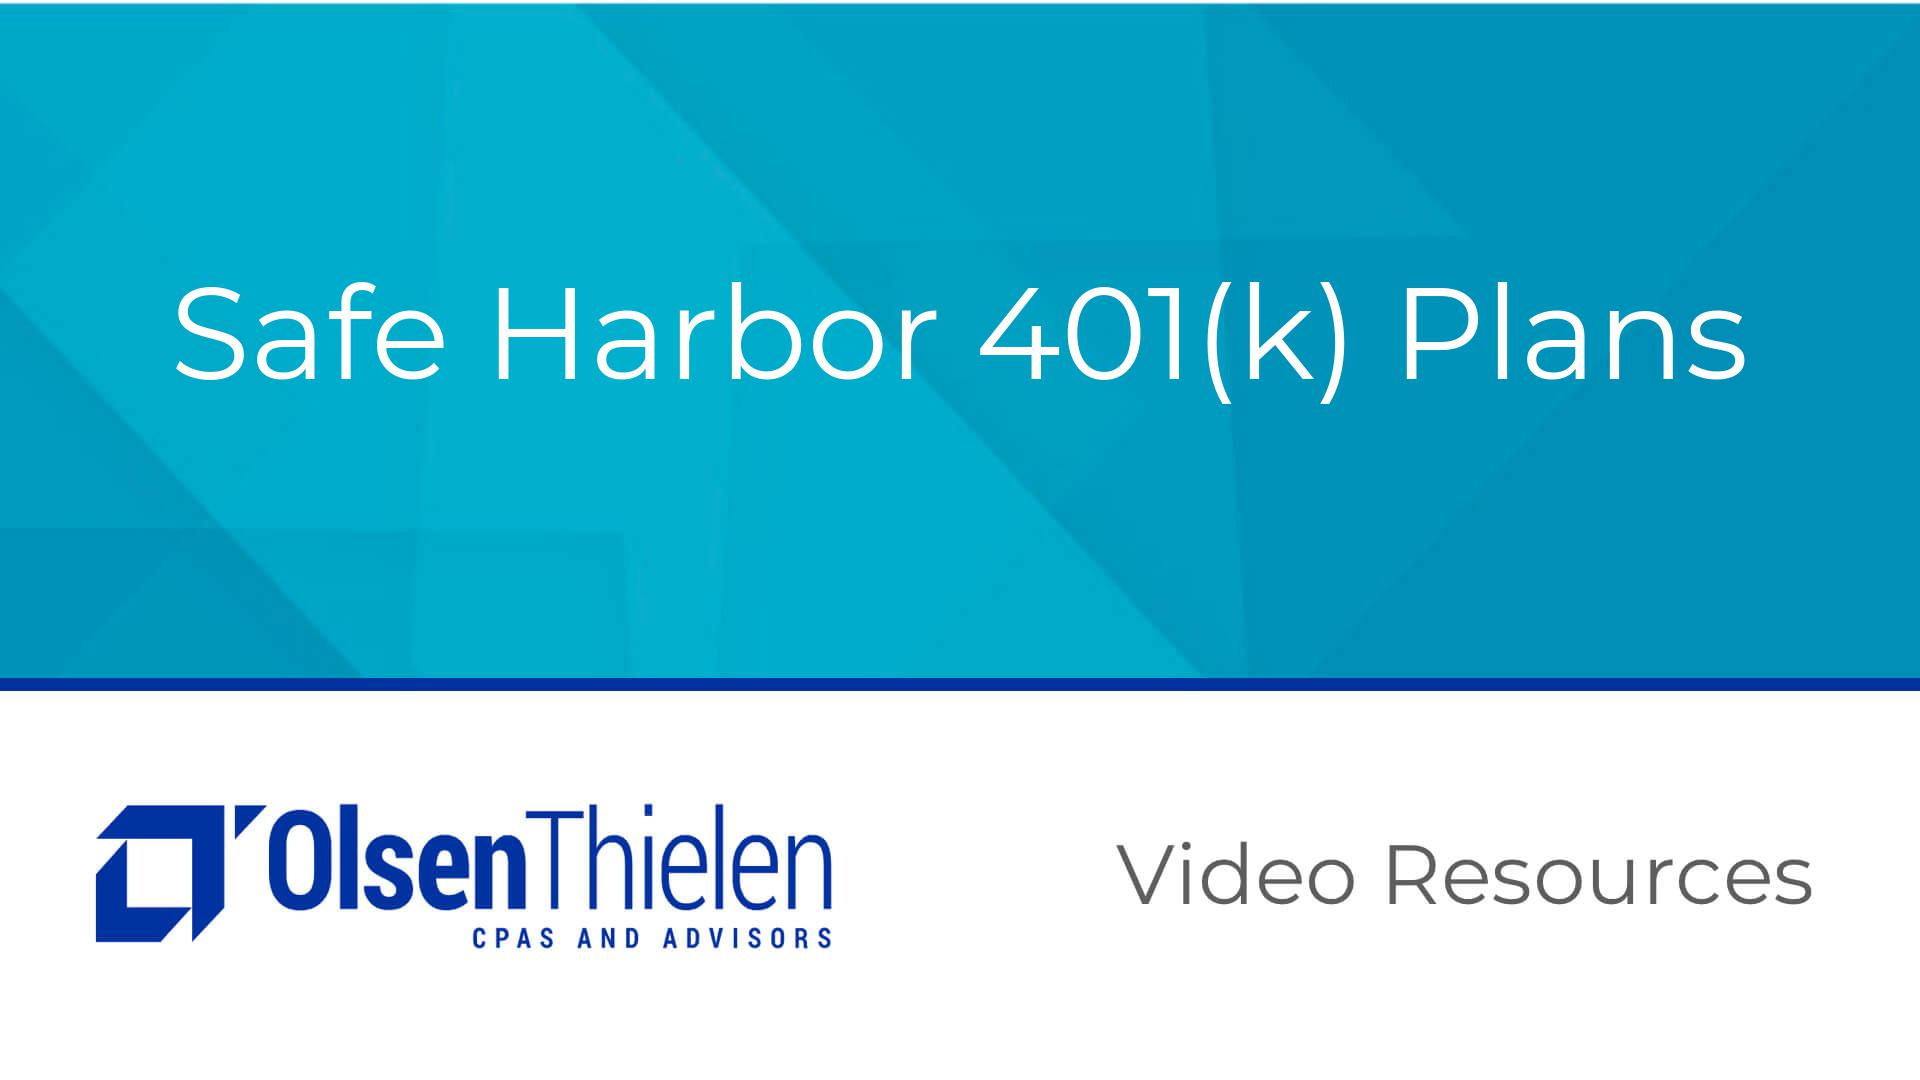 Safe Harbor 401(k) Plans